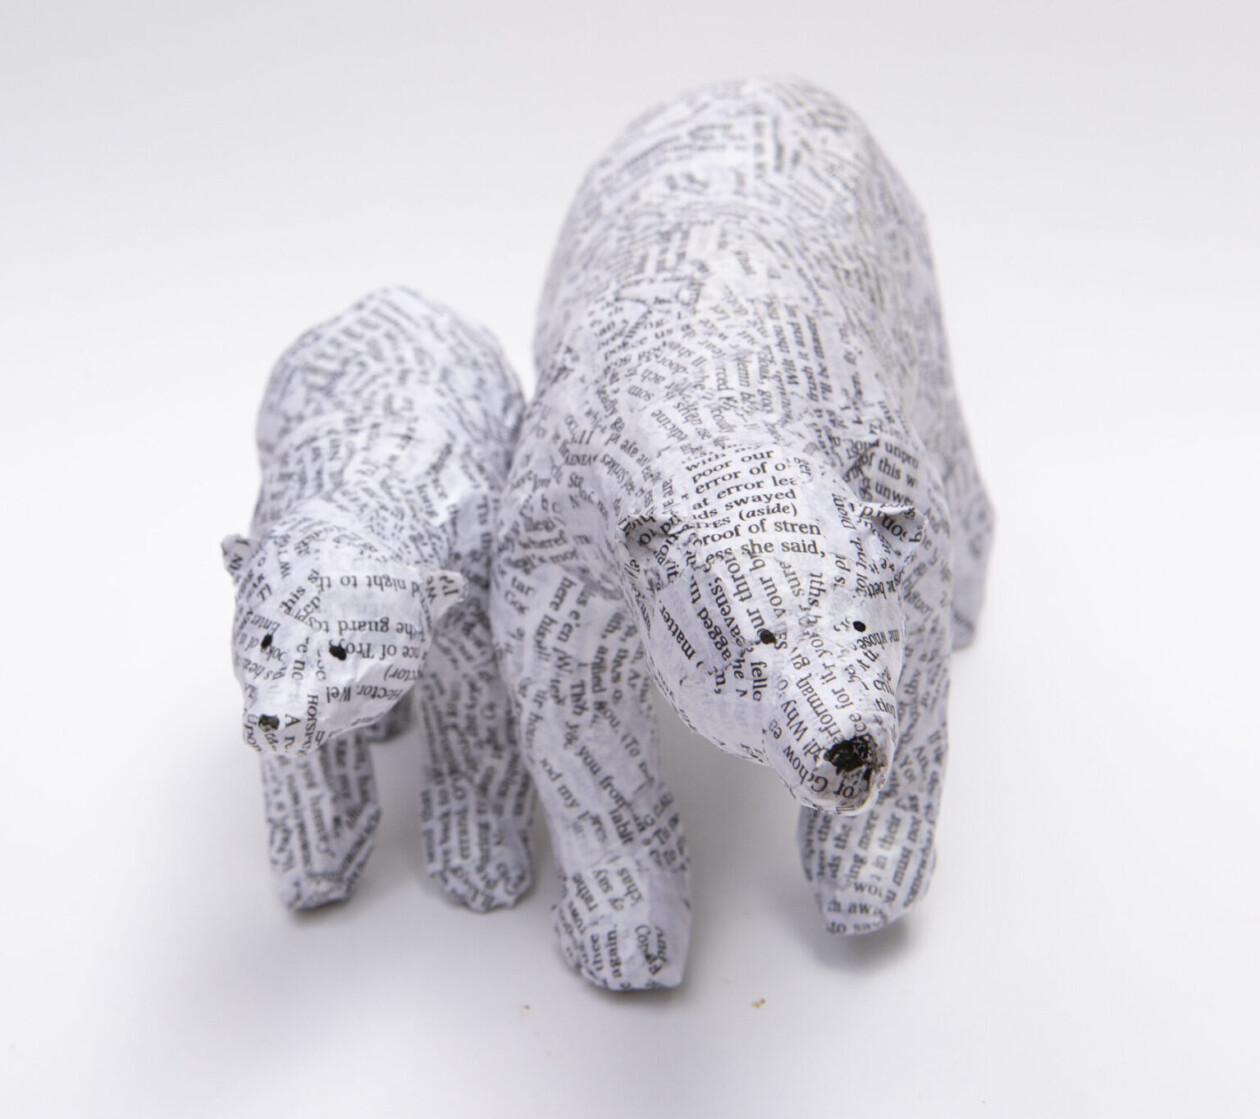 Wonderful Animal Papier Mâché Sculptures By Diana Parkhouse (2)